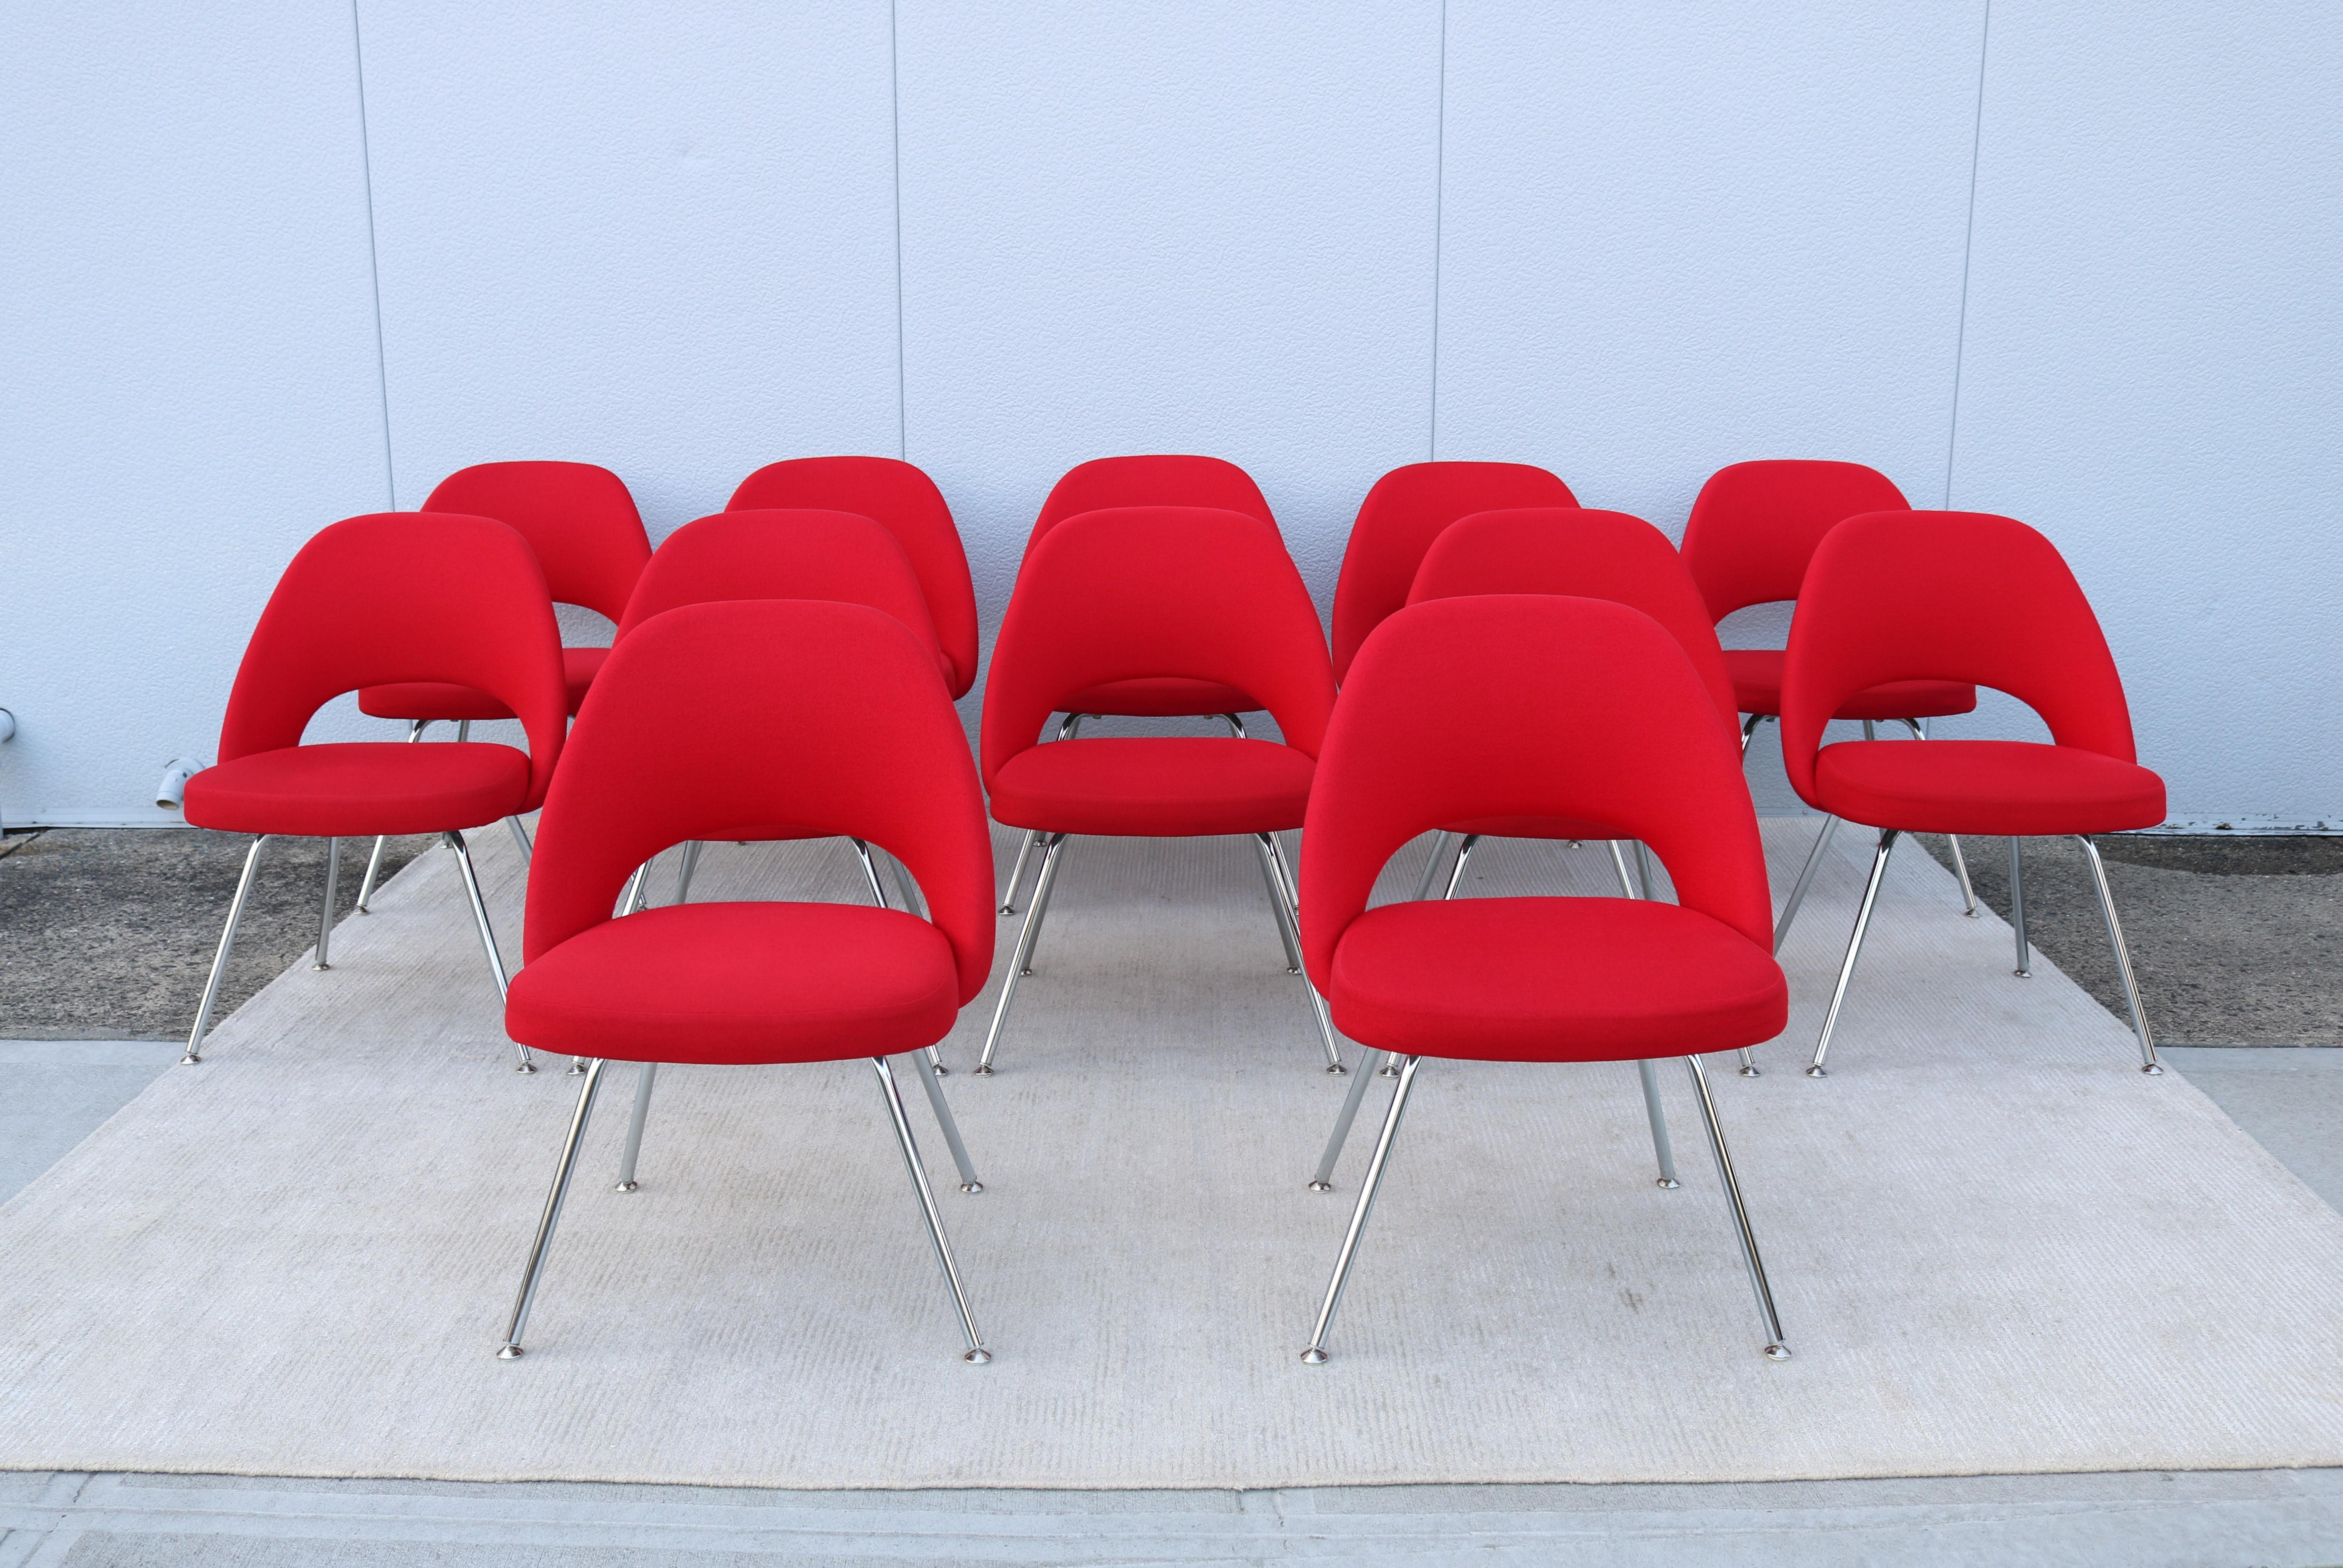 Superbe ensemble de douze fauteuils de direction sans accoudoirs Saarinen de Knoll, authentiquement moderne du milieu du siècle dernier.
L'un des designs les plus populaires de Knoll qui a atteint un confort suprême grâce à la forme de sa coque.
Il